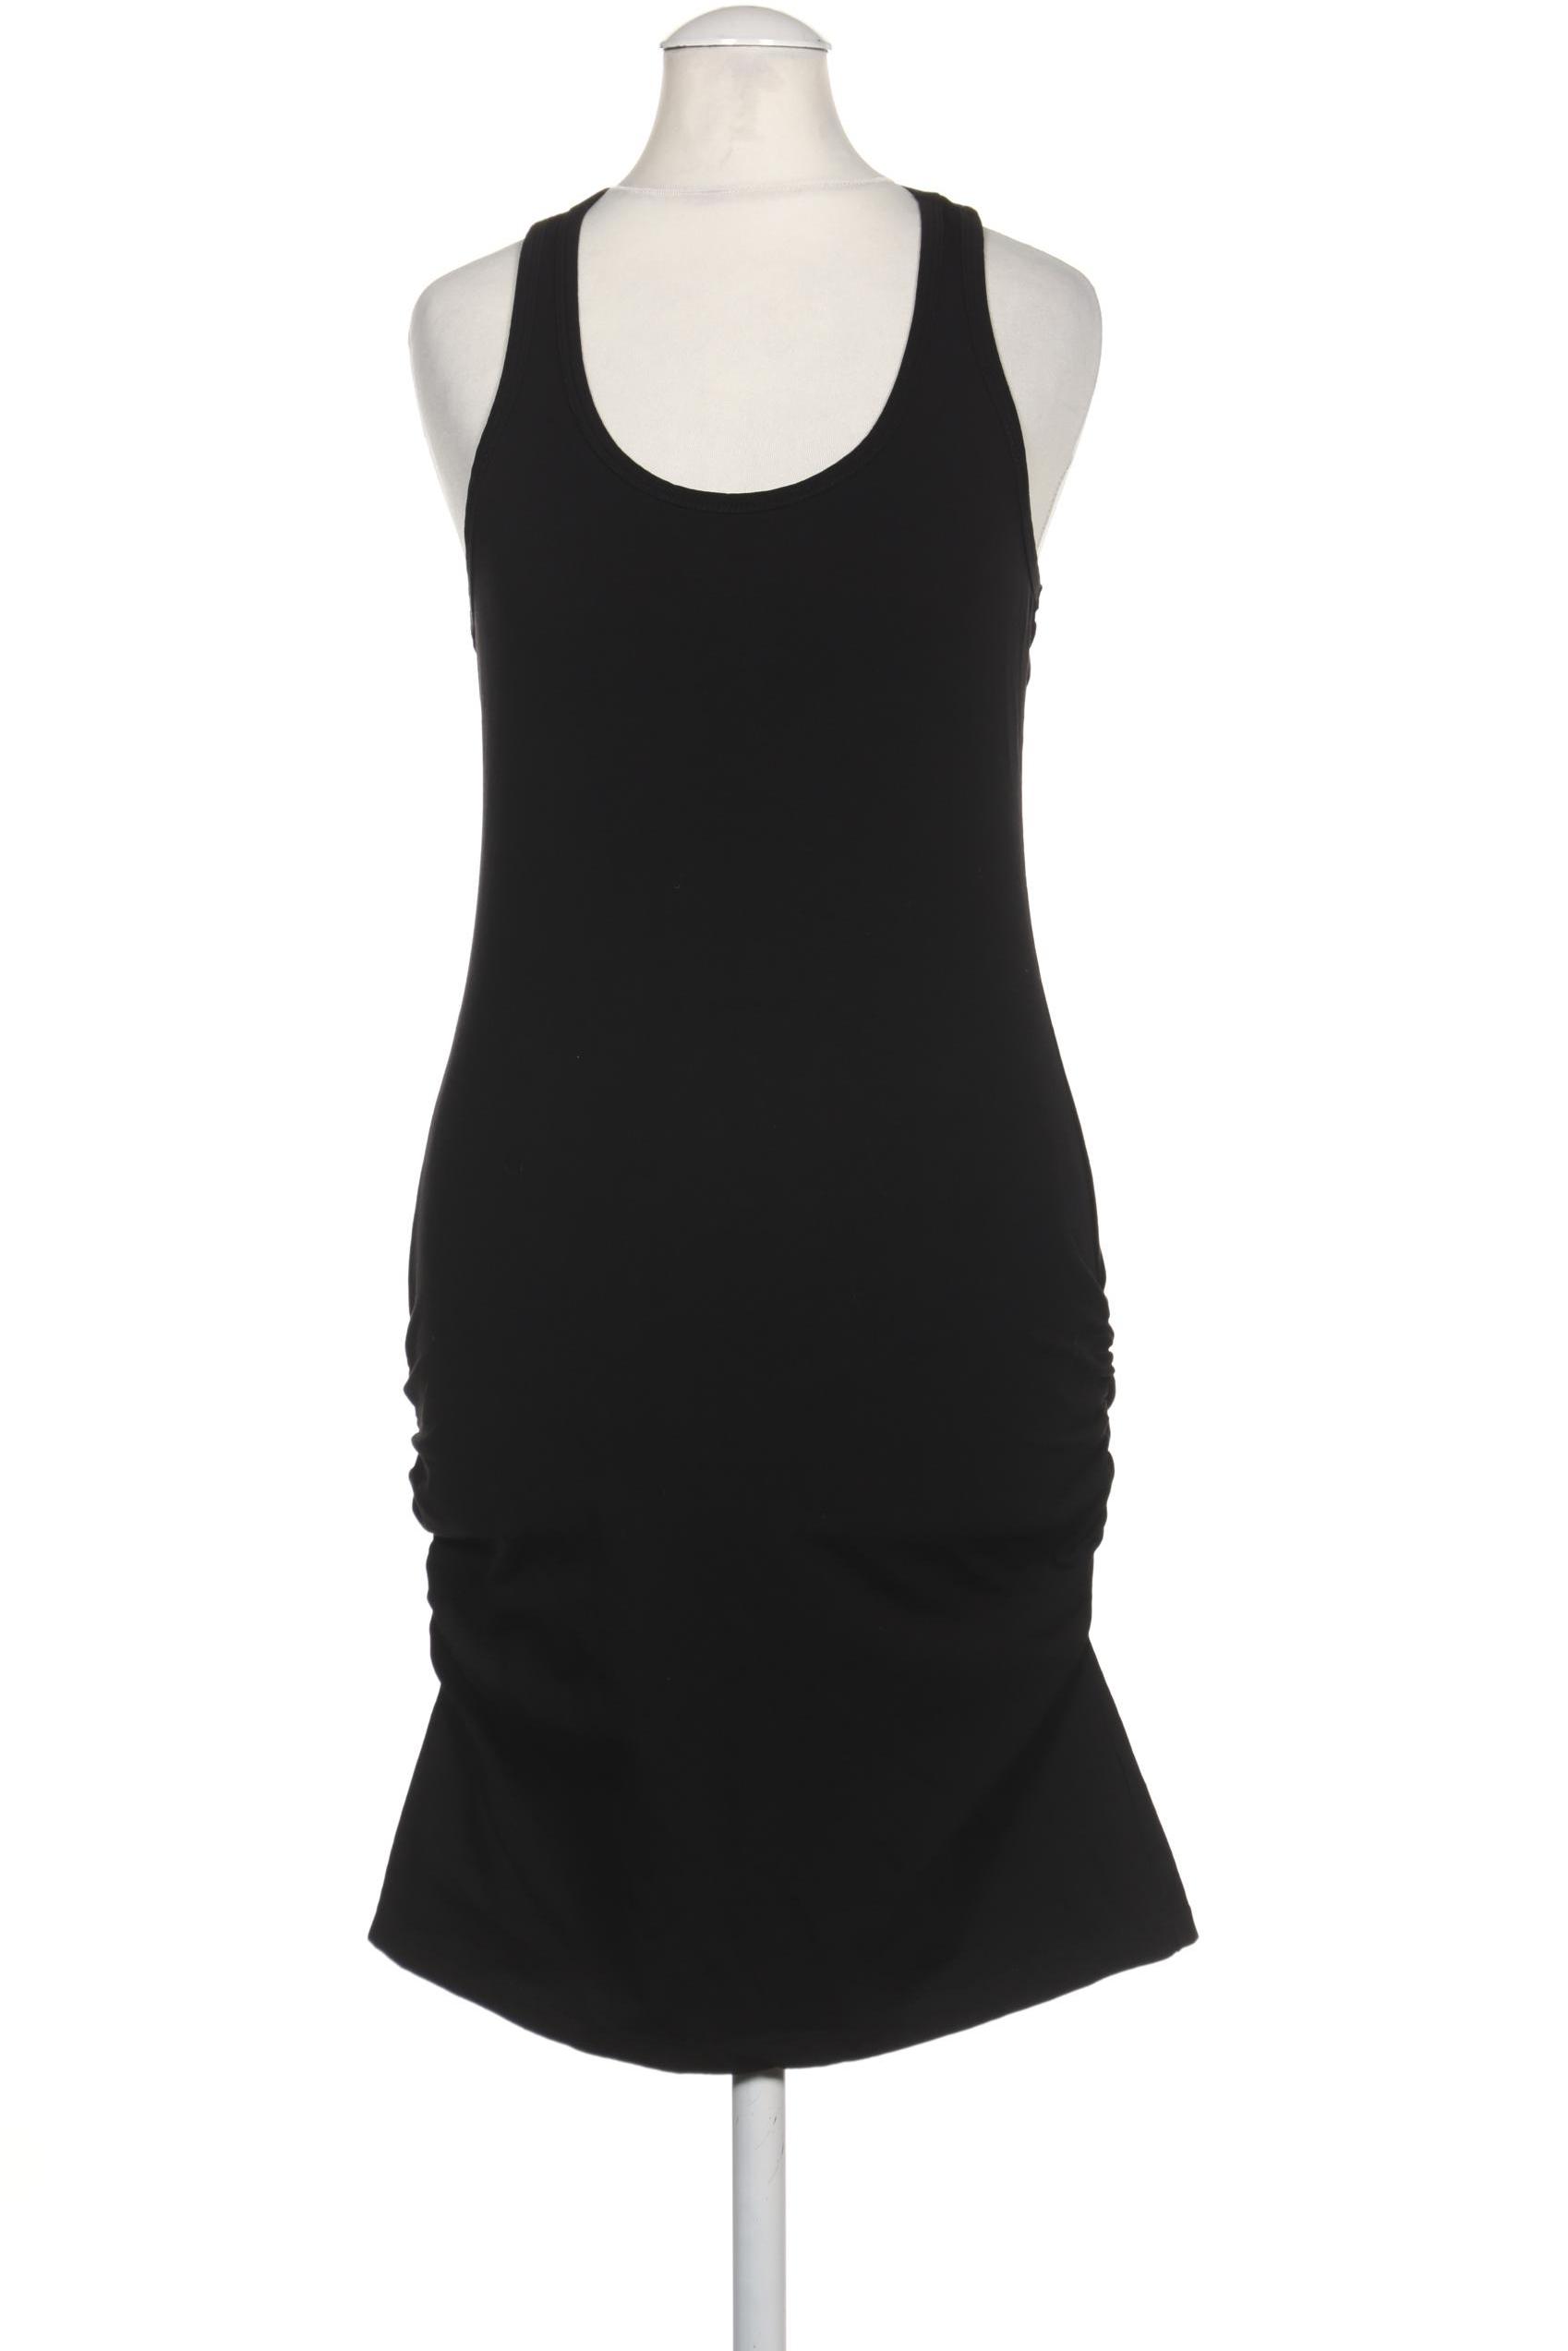 Venice Beach Damen Kleid, schwarz, Gr. 32 von VENICE BEACH